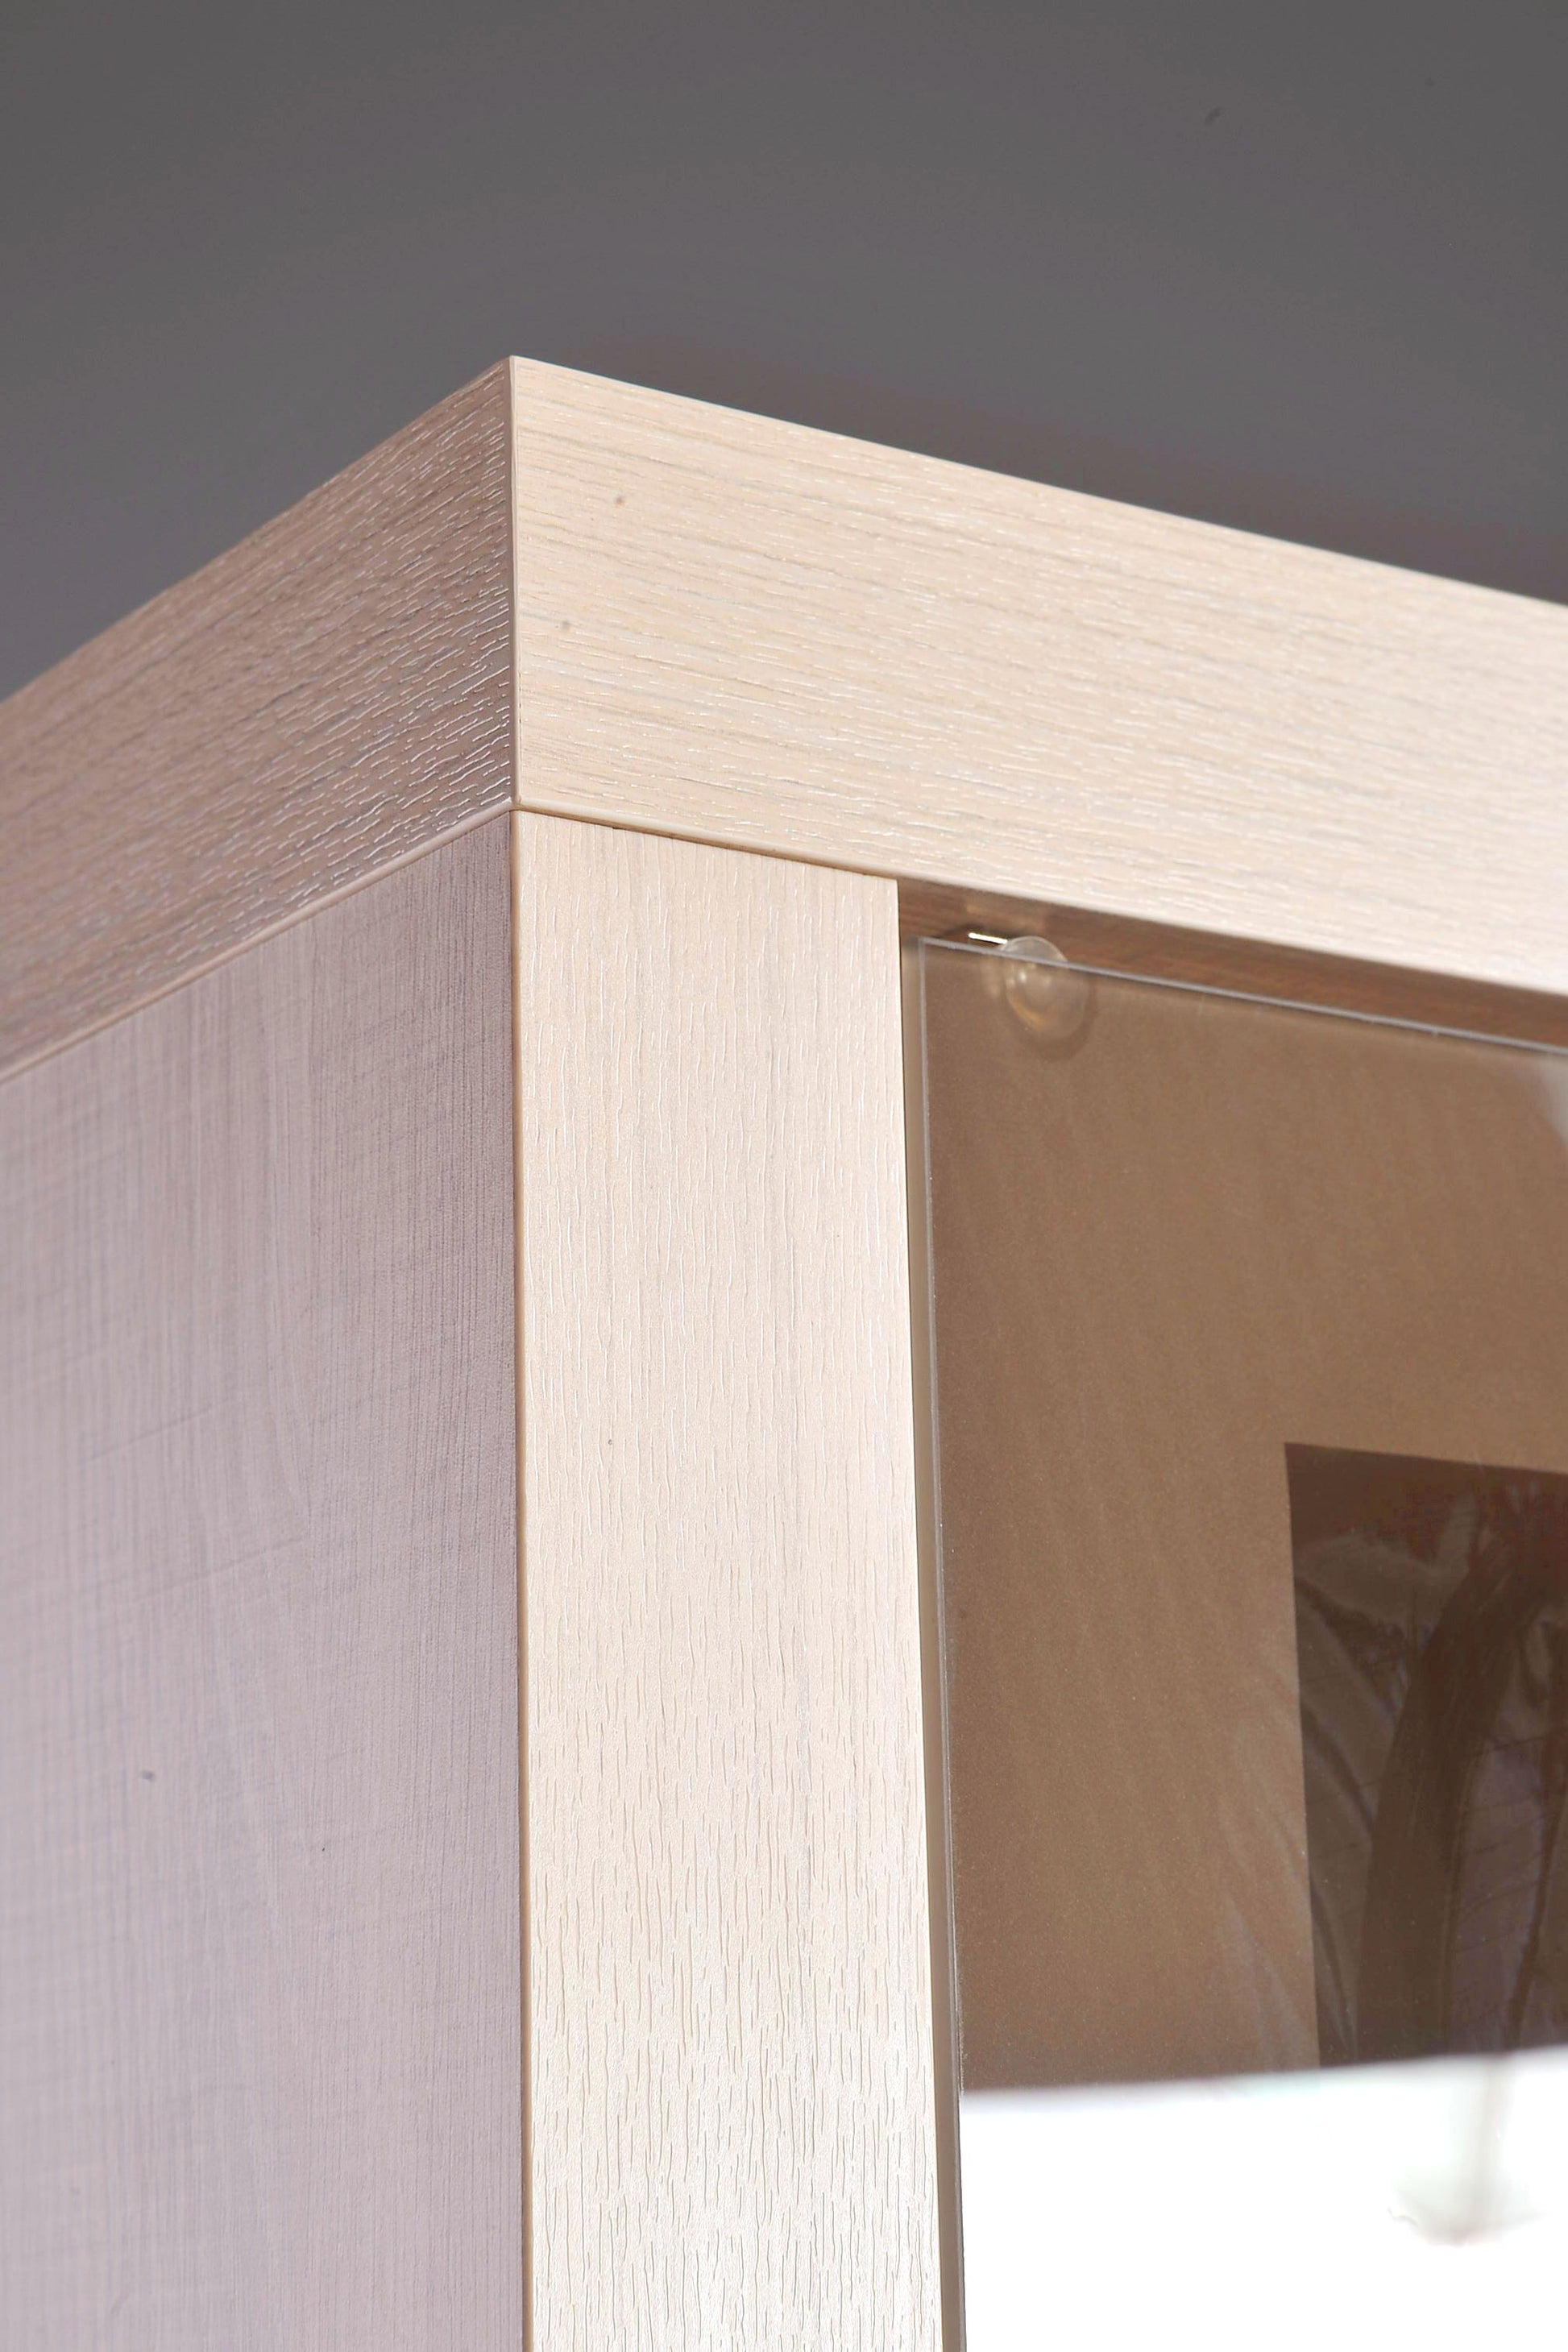 Ujęcie z boku na mebel z systemu SANTOS ukazujące estetykę wykonania, zastosowane w witrynie szkło oraz jasne wybarwienie.